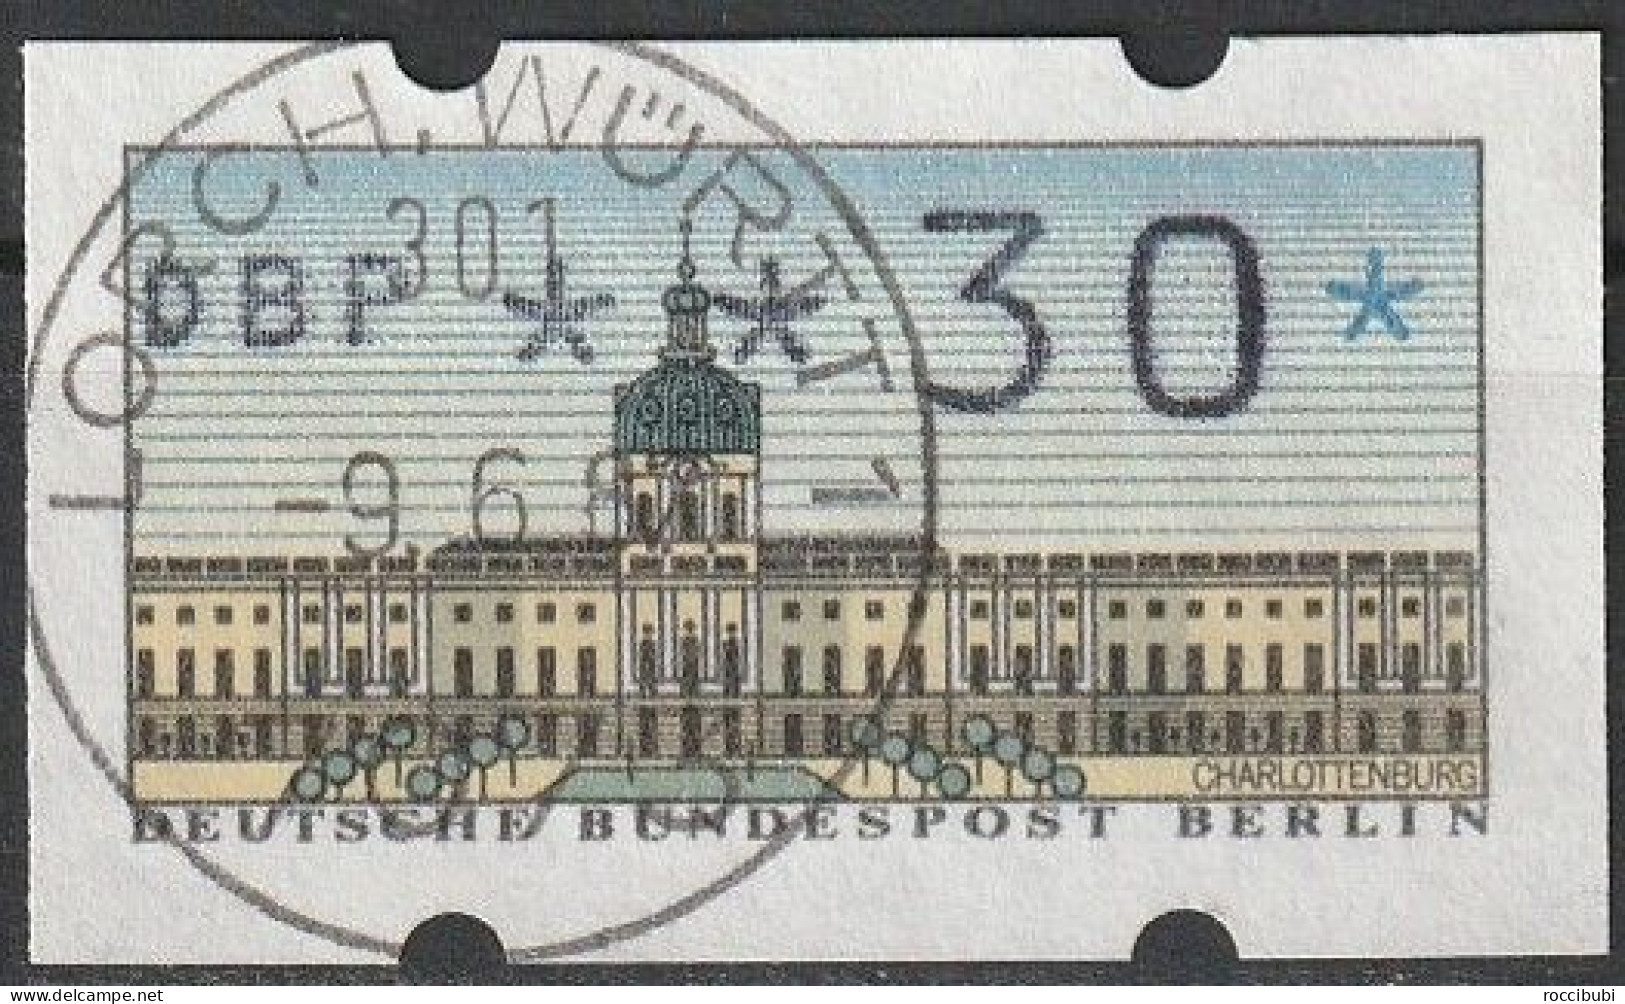 Berlin ATM 0,30 DM - Timbres De Distributeurs [ATM]